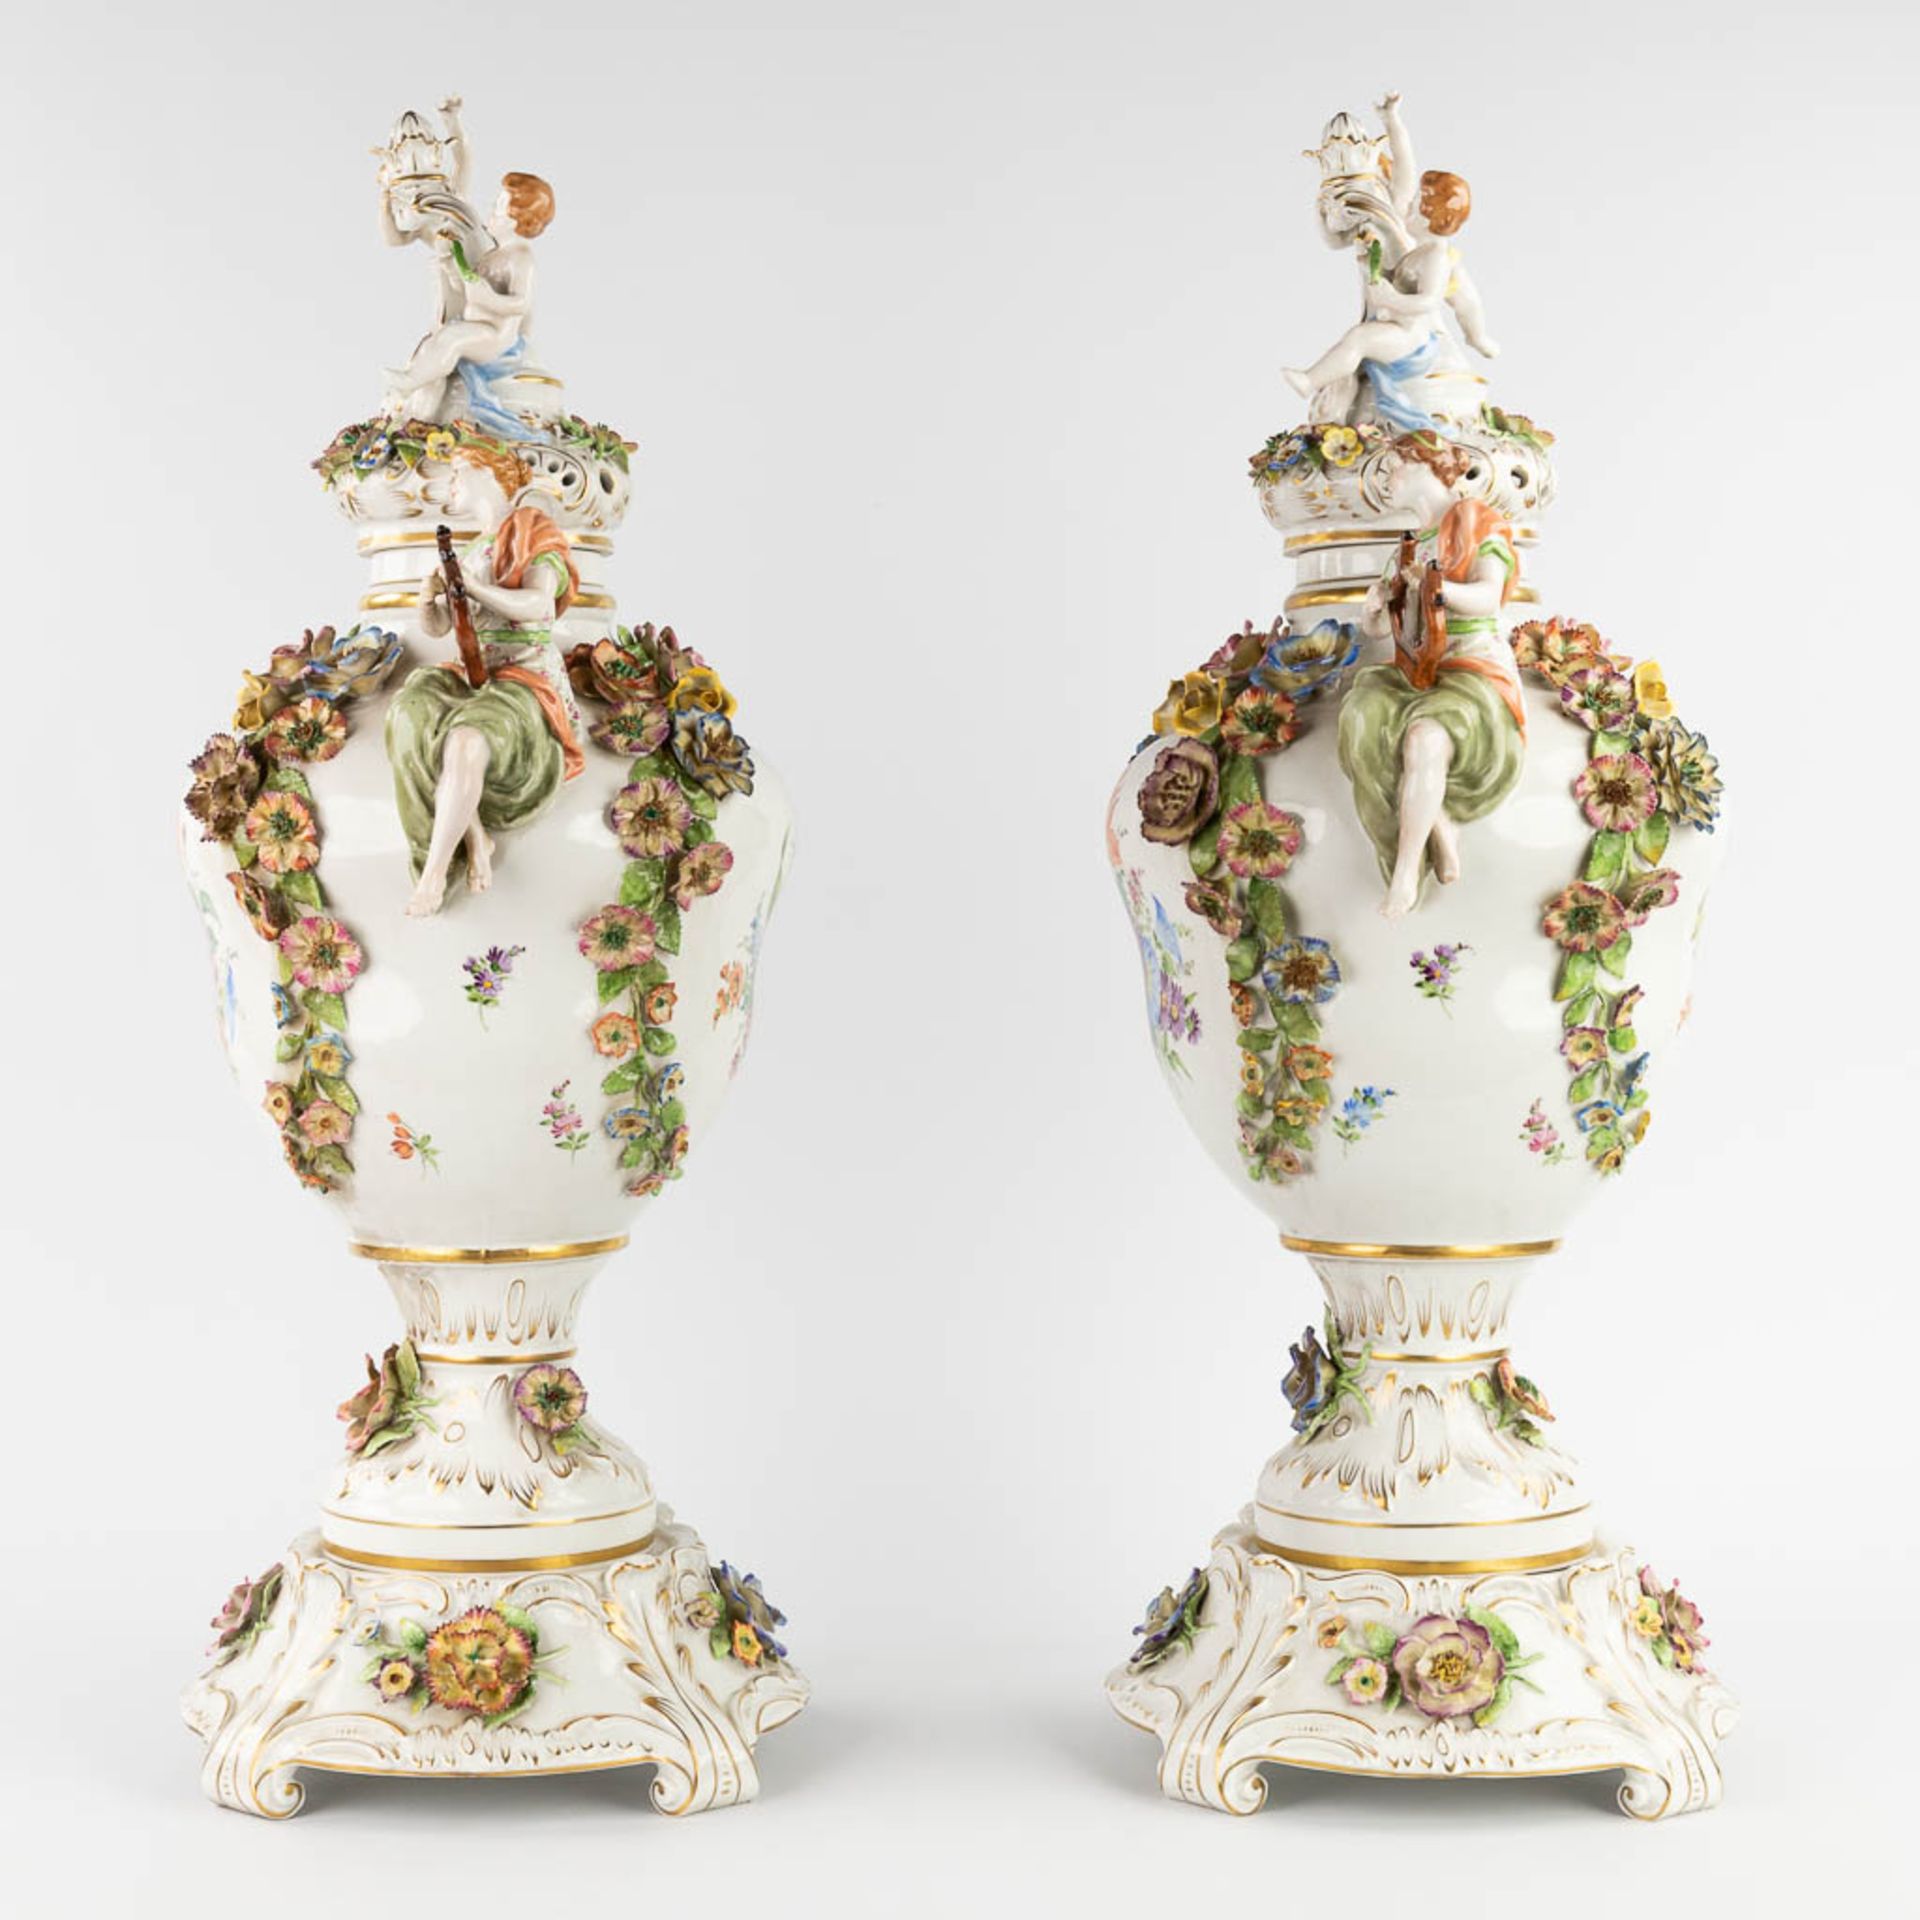 Von Schierholz, Plaue, a pair of large porcelain vases on stands. 20th C. (L:25 x W:35 x H:76 cm) - Image 5 of 19